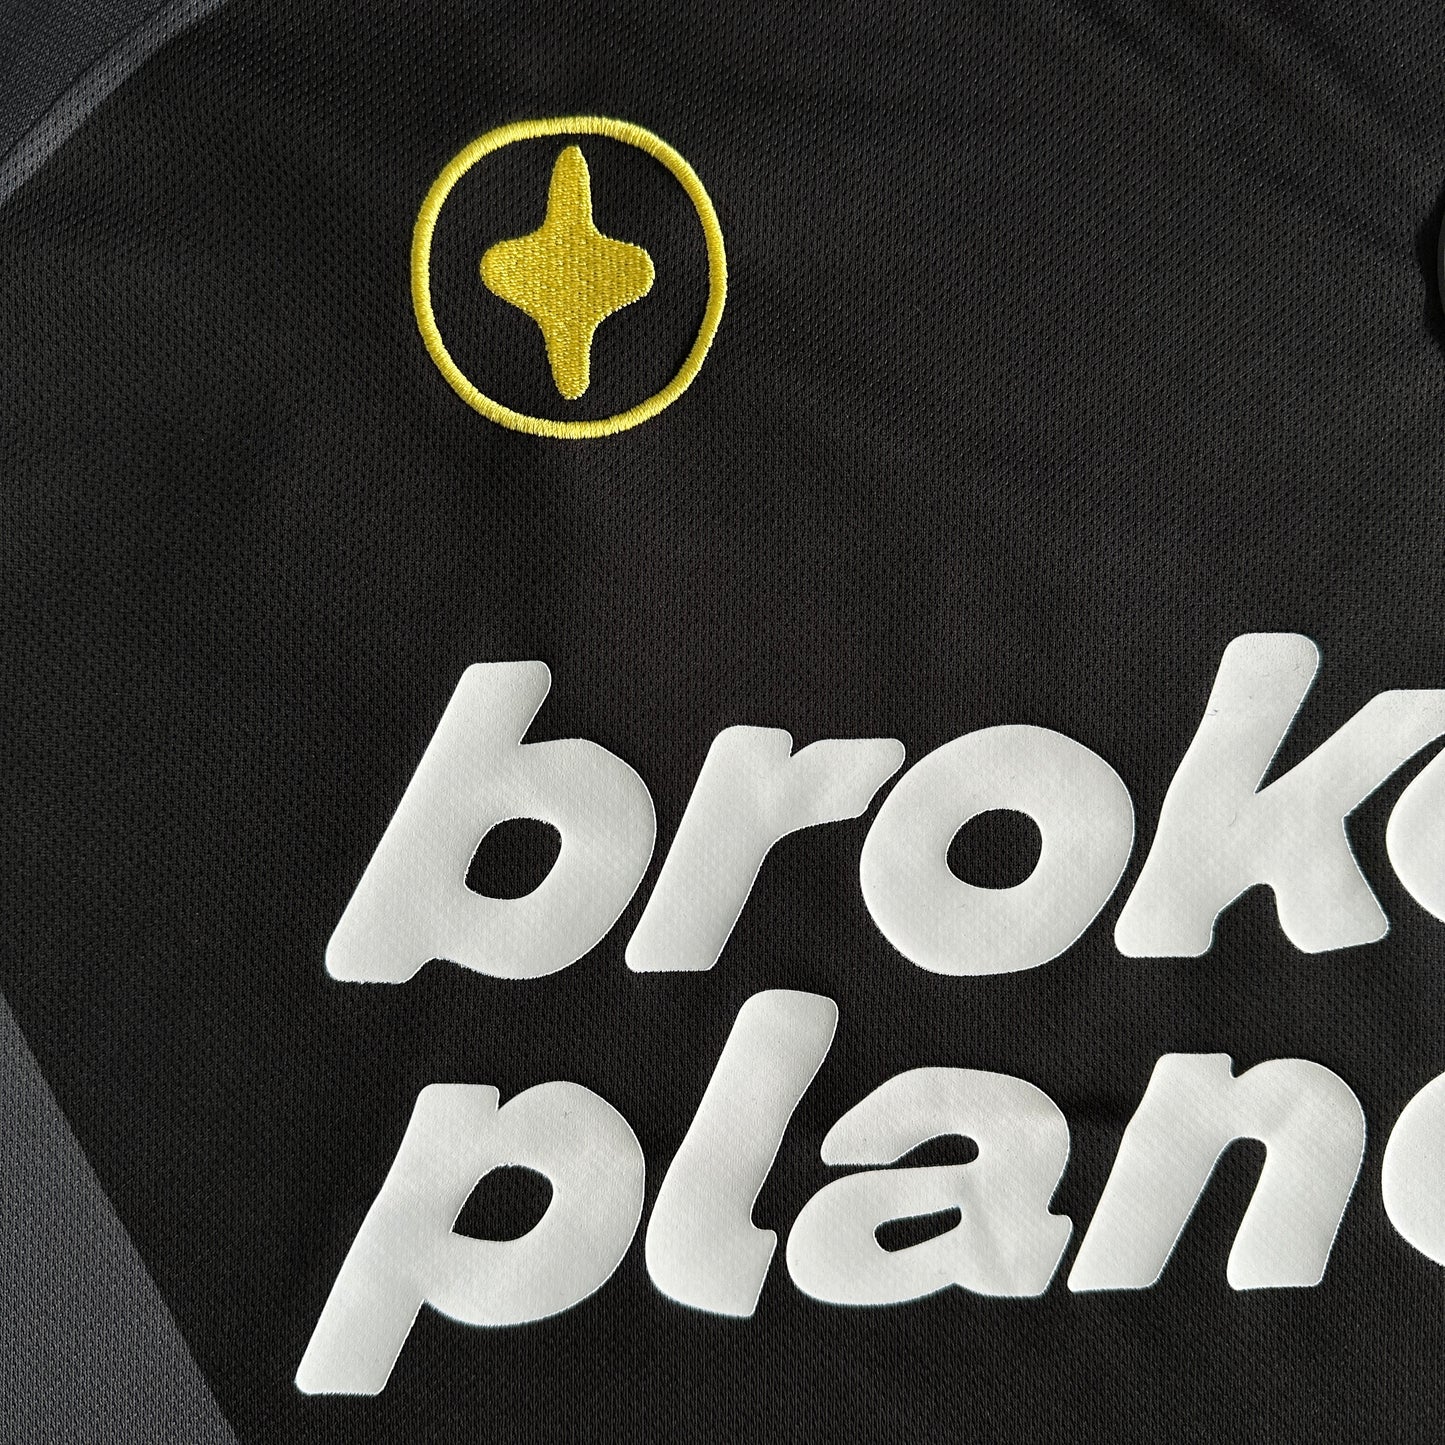 T-Shirt à manches courtes Broken Planet Football Tee Sweatshirt - Noir/Gris